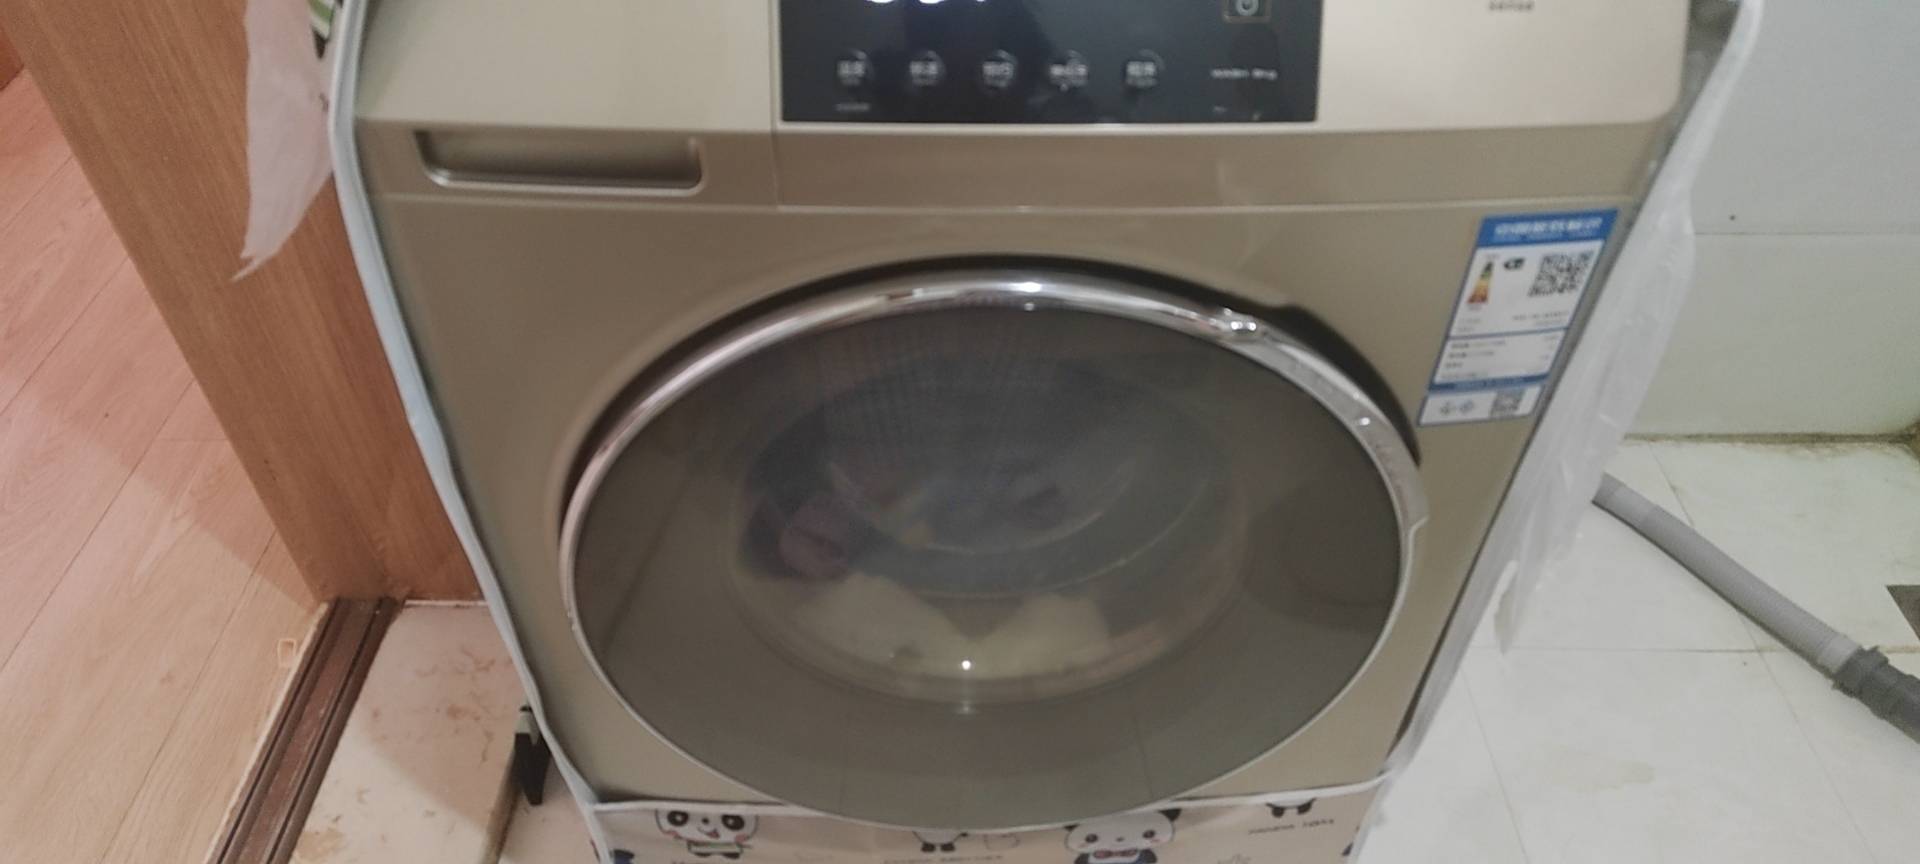 惠而浦(Whirlpool) 9公斤全自动大容量滚筒洗衣机变频家用 预约洗涤 羽绒洗 羊毛洗 CWF050184BG晒单图